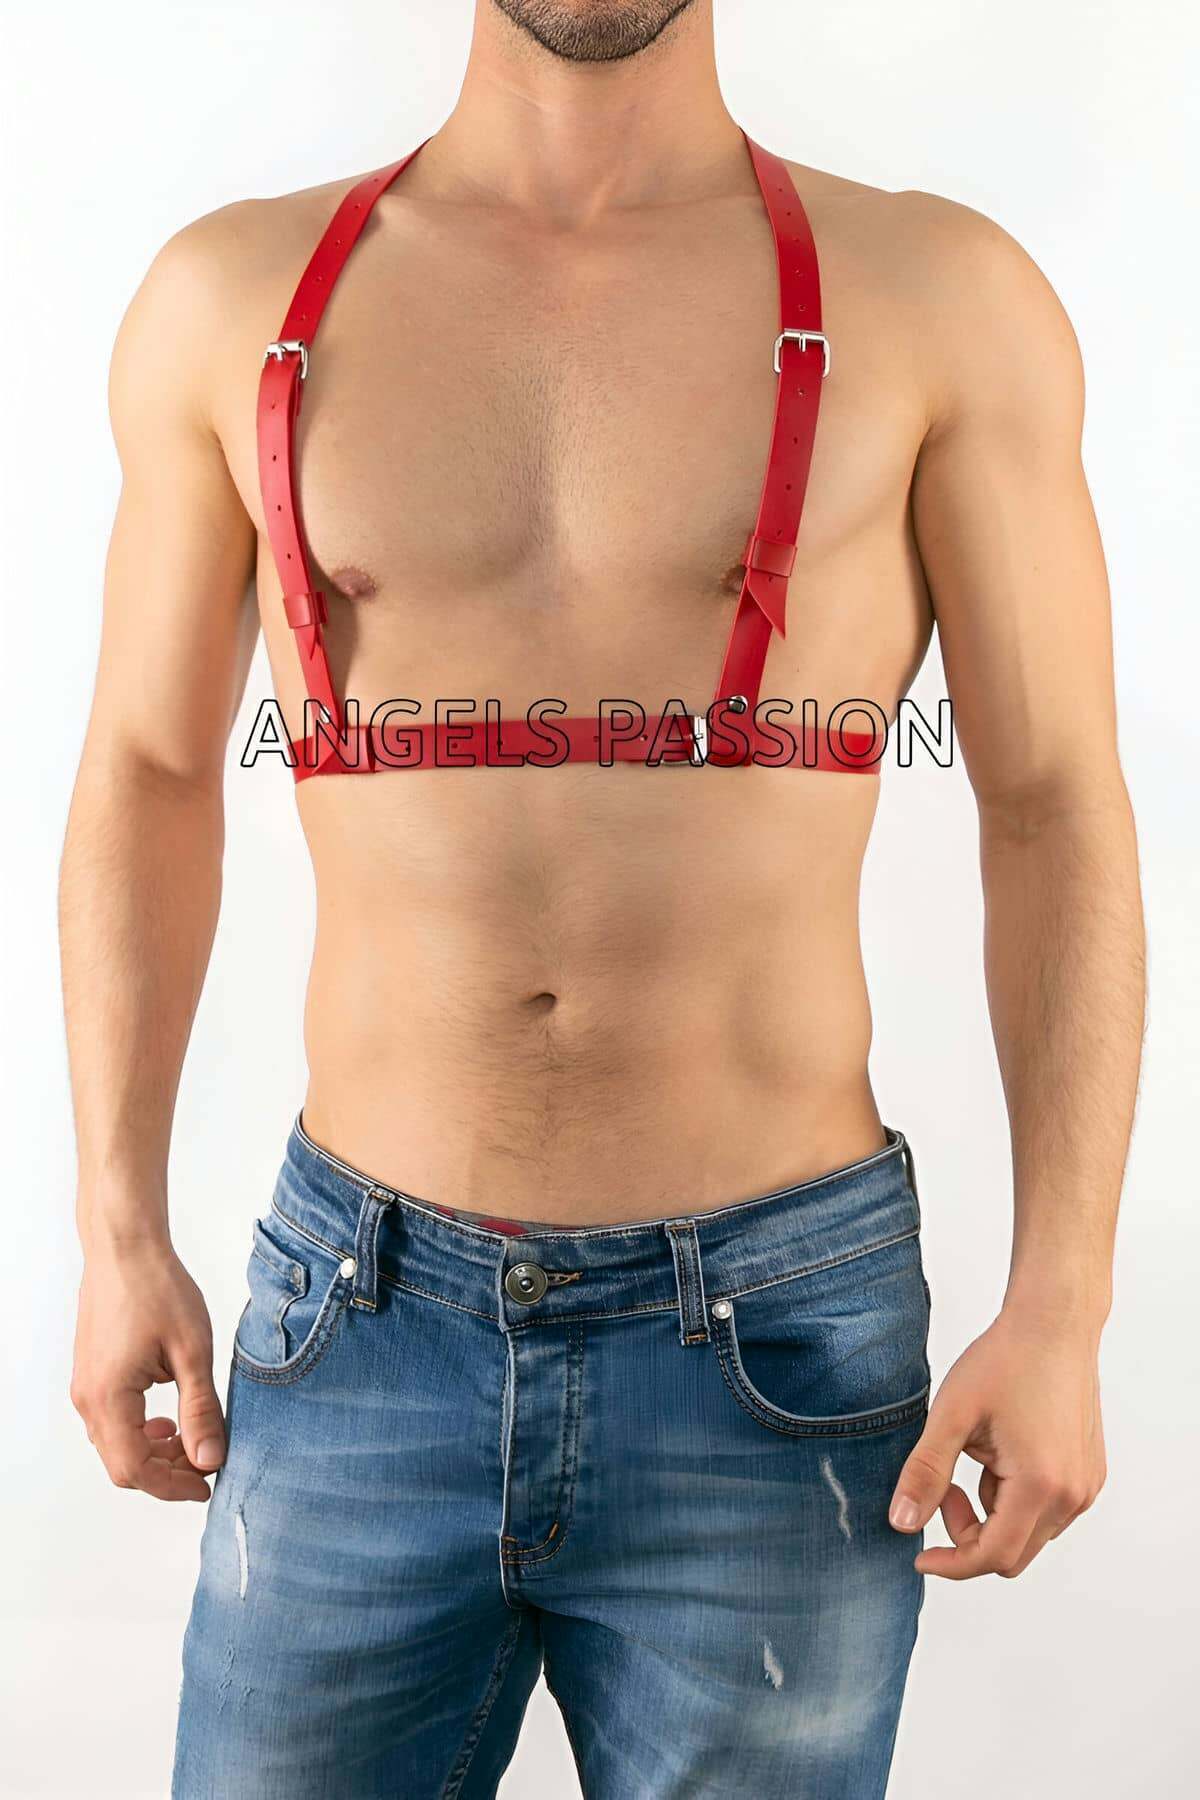 Lisinya41 Deri Erkek İç Giyim, Gay Fantazi Giyim Modelleri - Ürün Rengi:Kırmızı